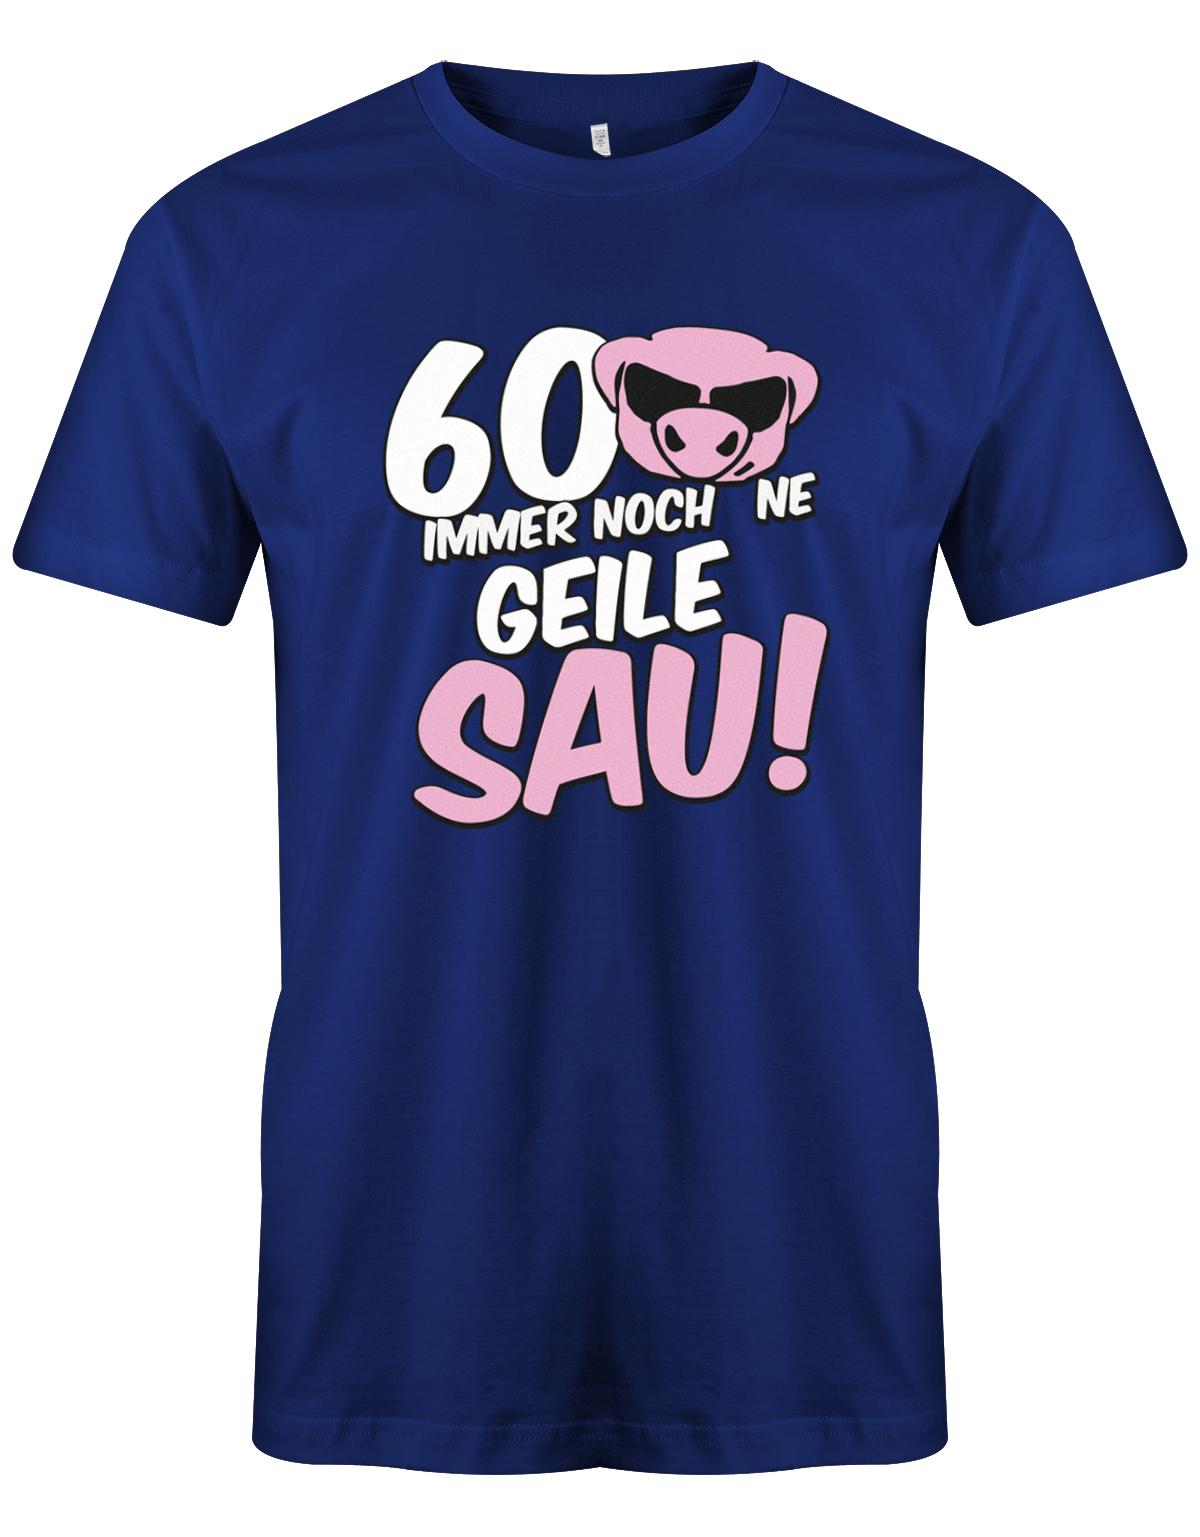 Lustiges T-Shirt zum 60 Geburtstag für den Mann Bedruckt mit 60 Immer noch 'ne geile Sau! Sau mit Sonnenbrille Royalblau